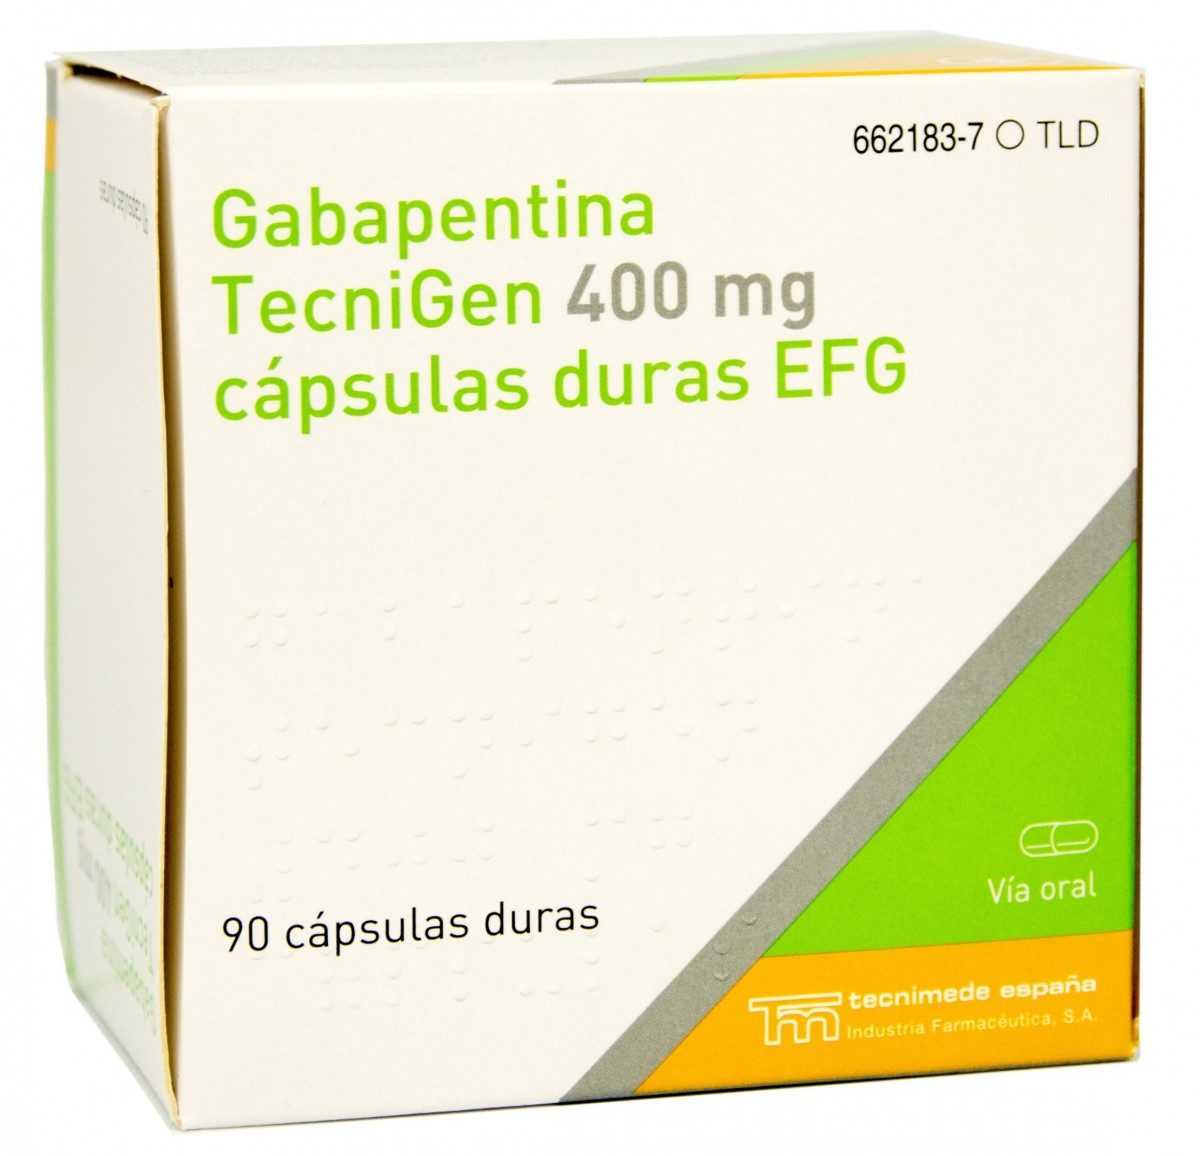 GABAPENTINA TECNIGEN 400 mg CAPSULAS DURAS EFG, 90 cápsulas fotografía del envase.